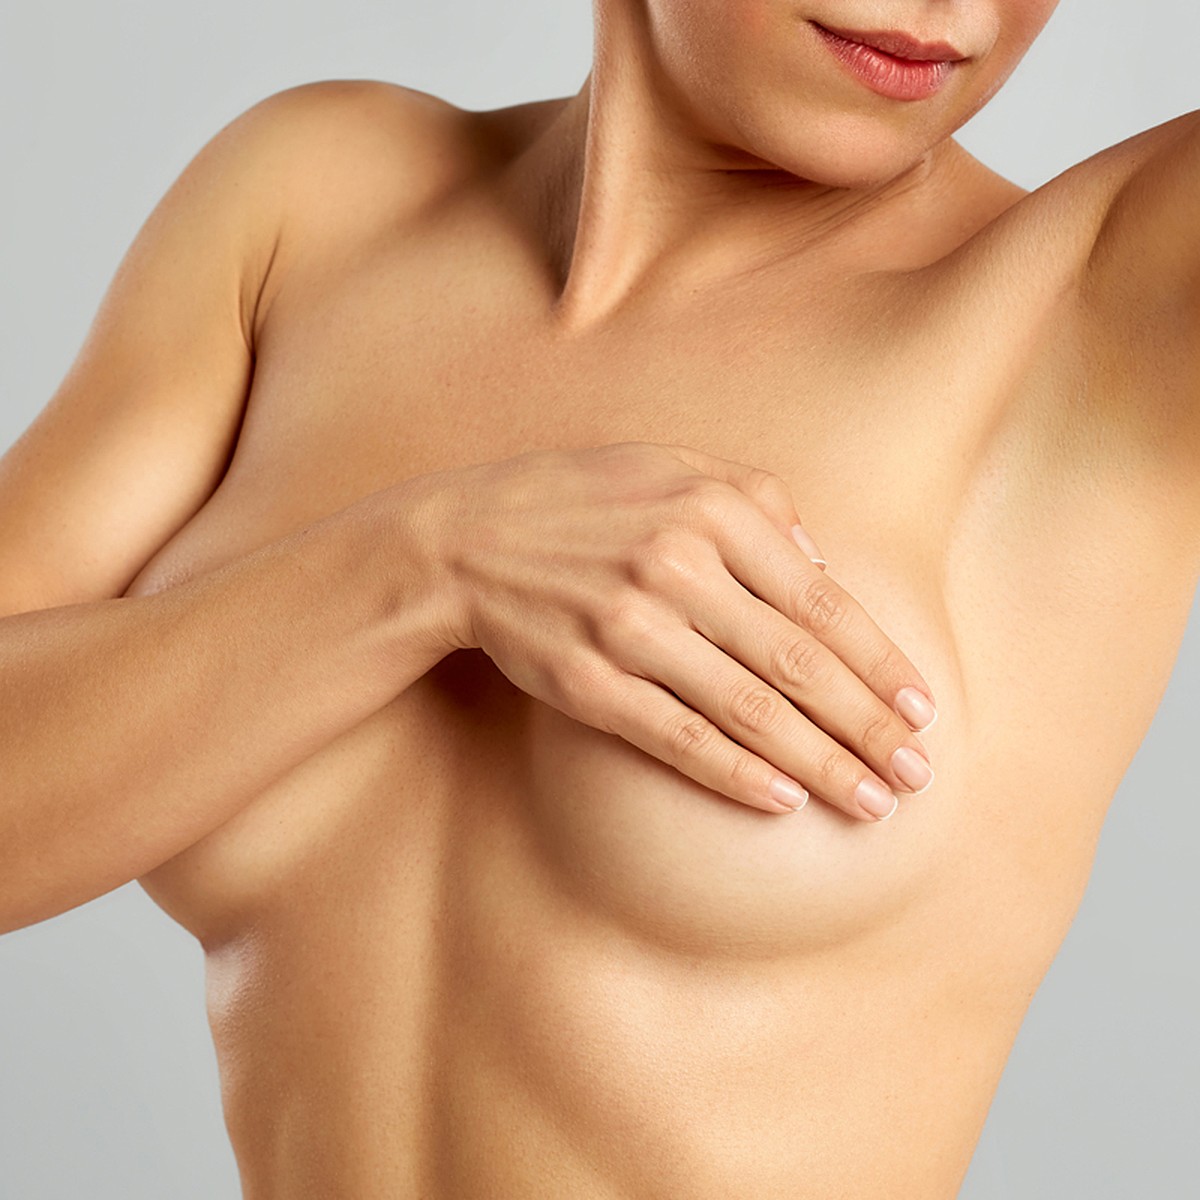 Как узнать тип своей груди - читайте в блоге Intimo о нижнем белье и купальниках